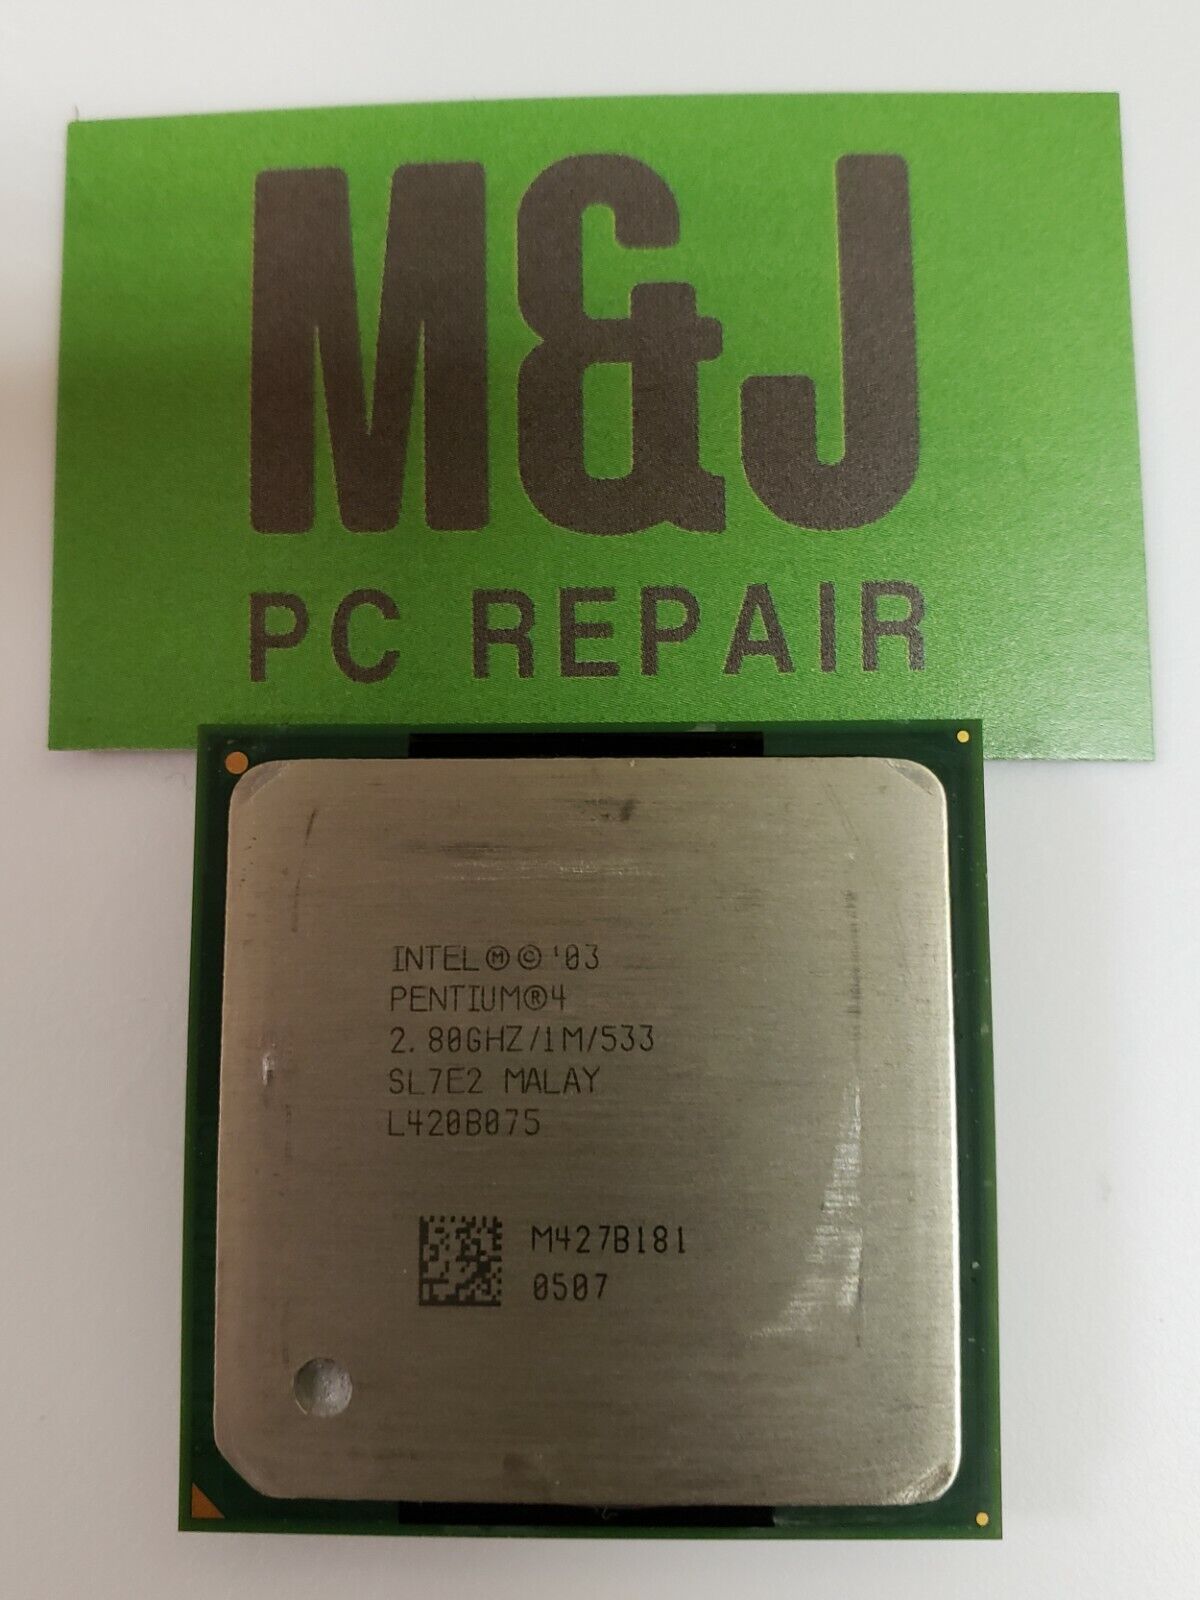 Intel '03 Pentium 4 